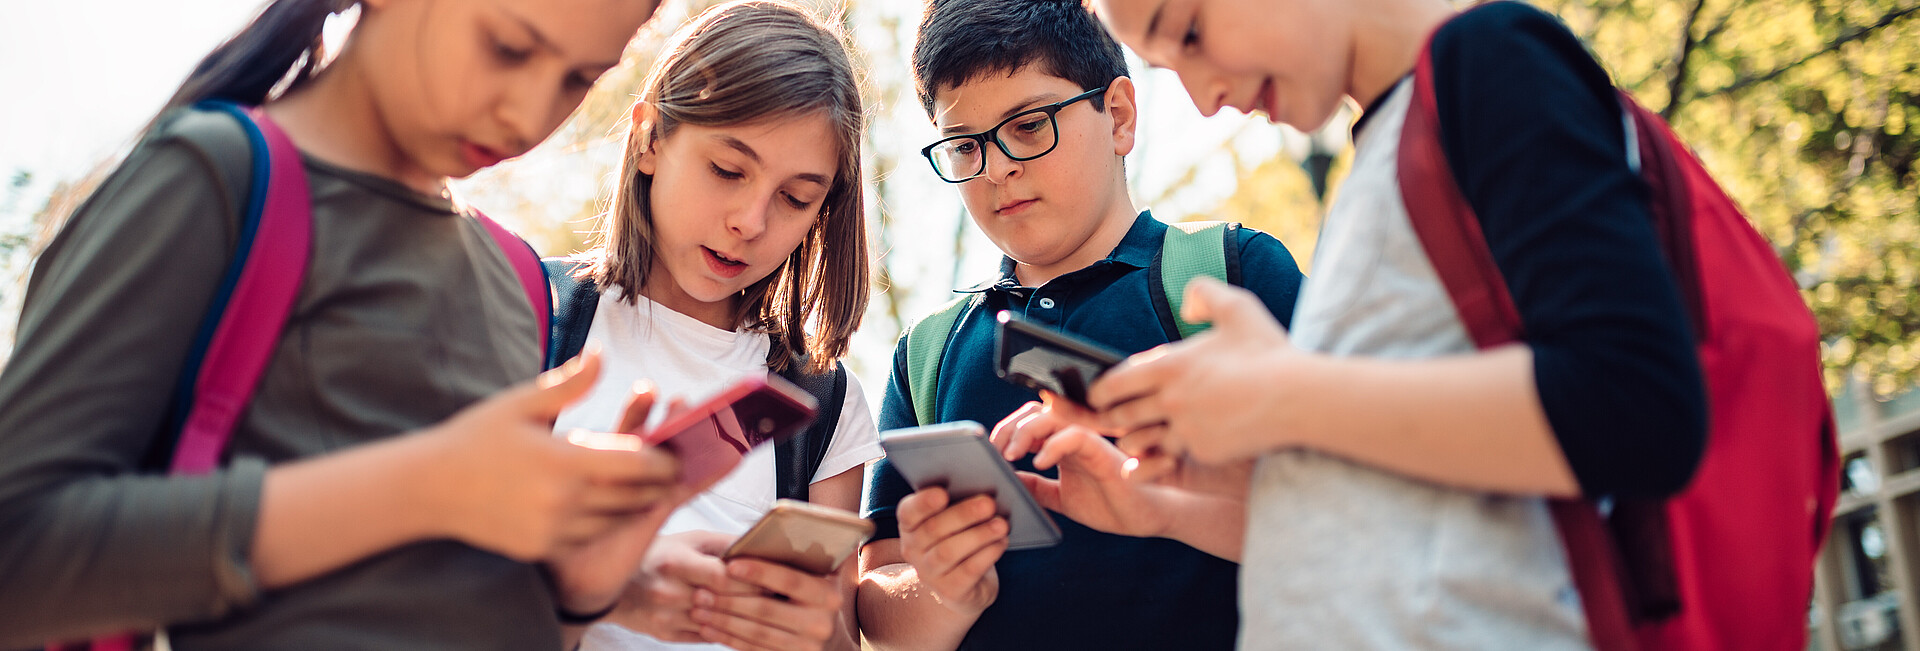 Schulkinder stehen zusammen und benutzen Handys